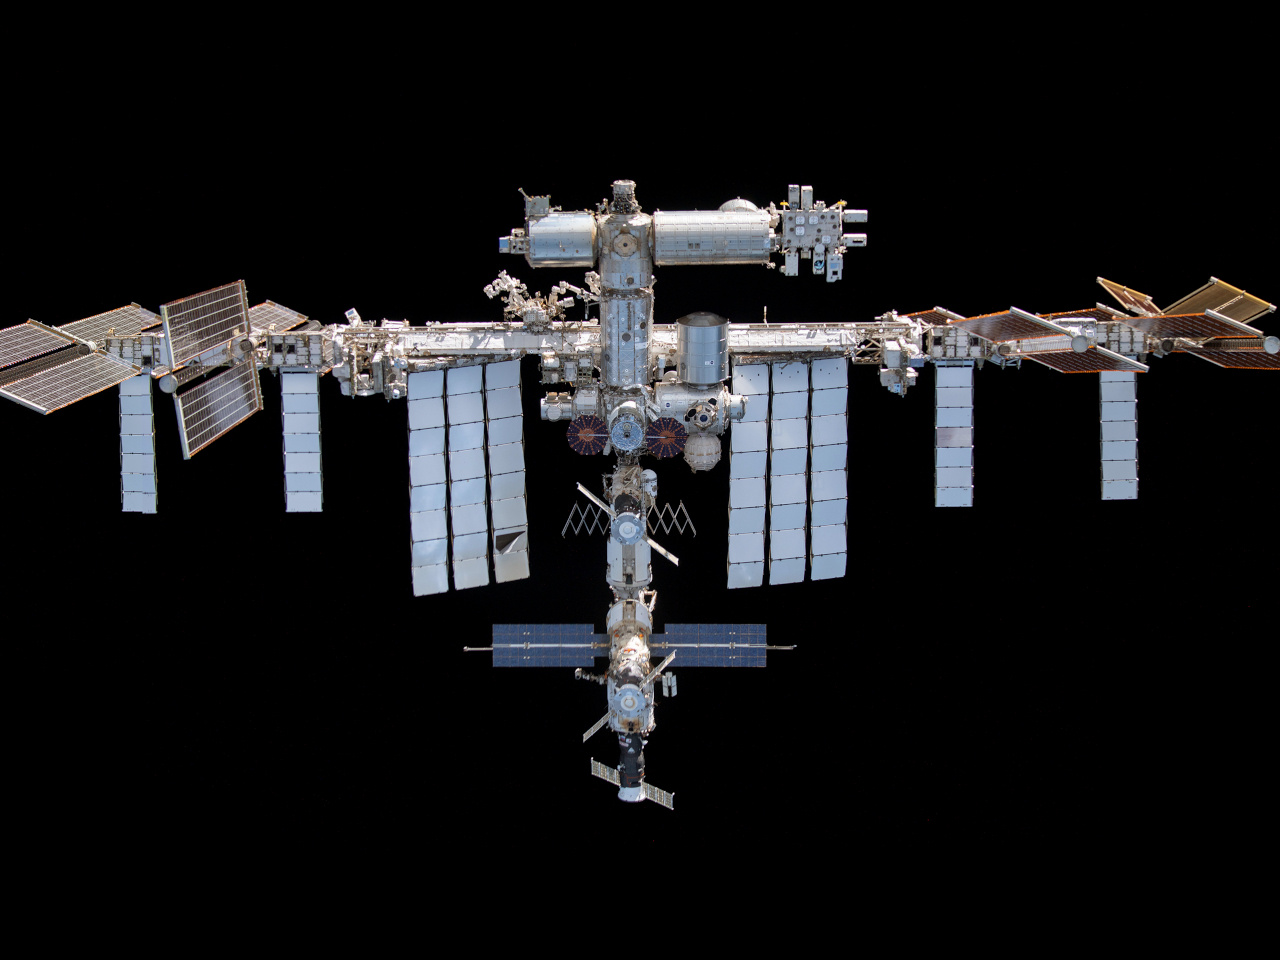 運用終了のロシア衛星が分解、宇宙ゴミが発生--ISS滞在中の宇宙飛行士、スターライナーに避難